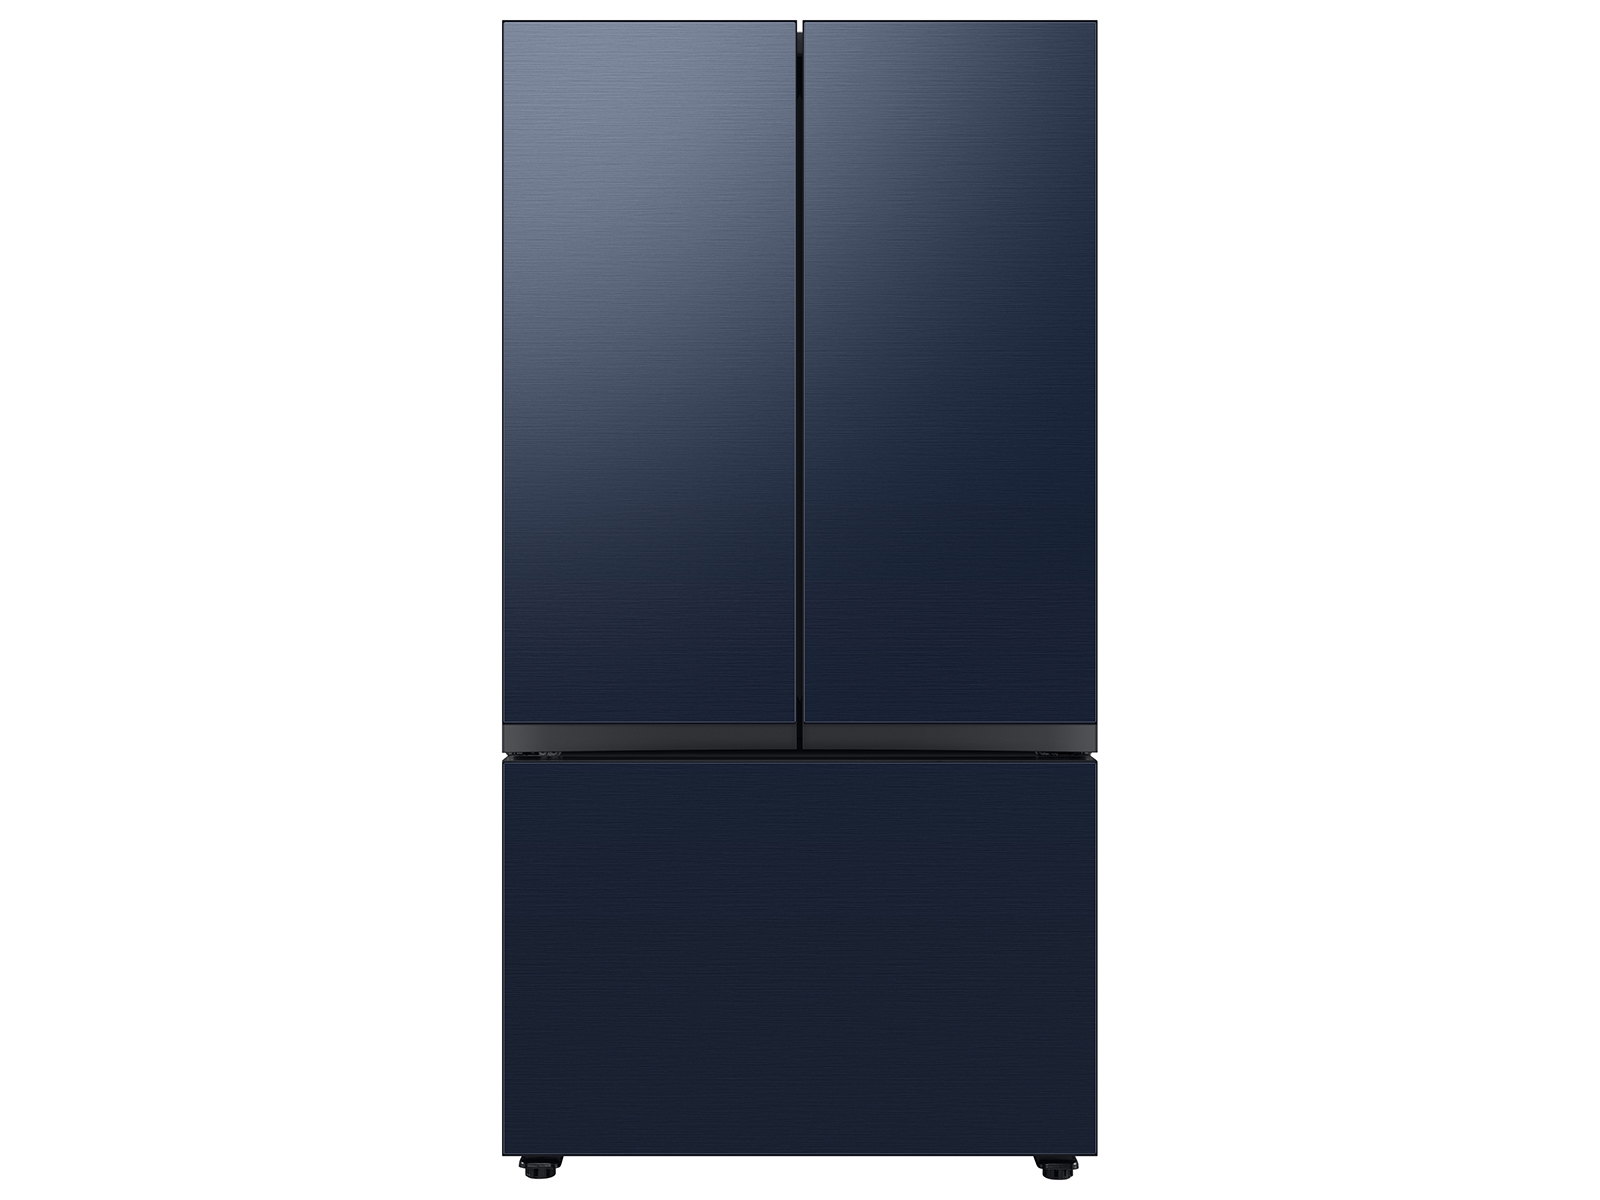 Samsung Bespoke 3-Door French Door Refrigerator in Navy Blue (24 cu. ft.) with Beverage Center™ in Navy Steel(BNDL-1650310619089)